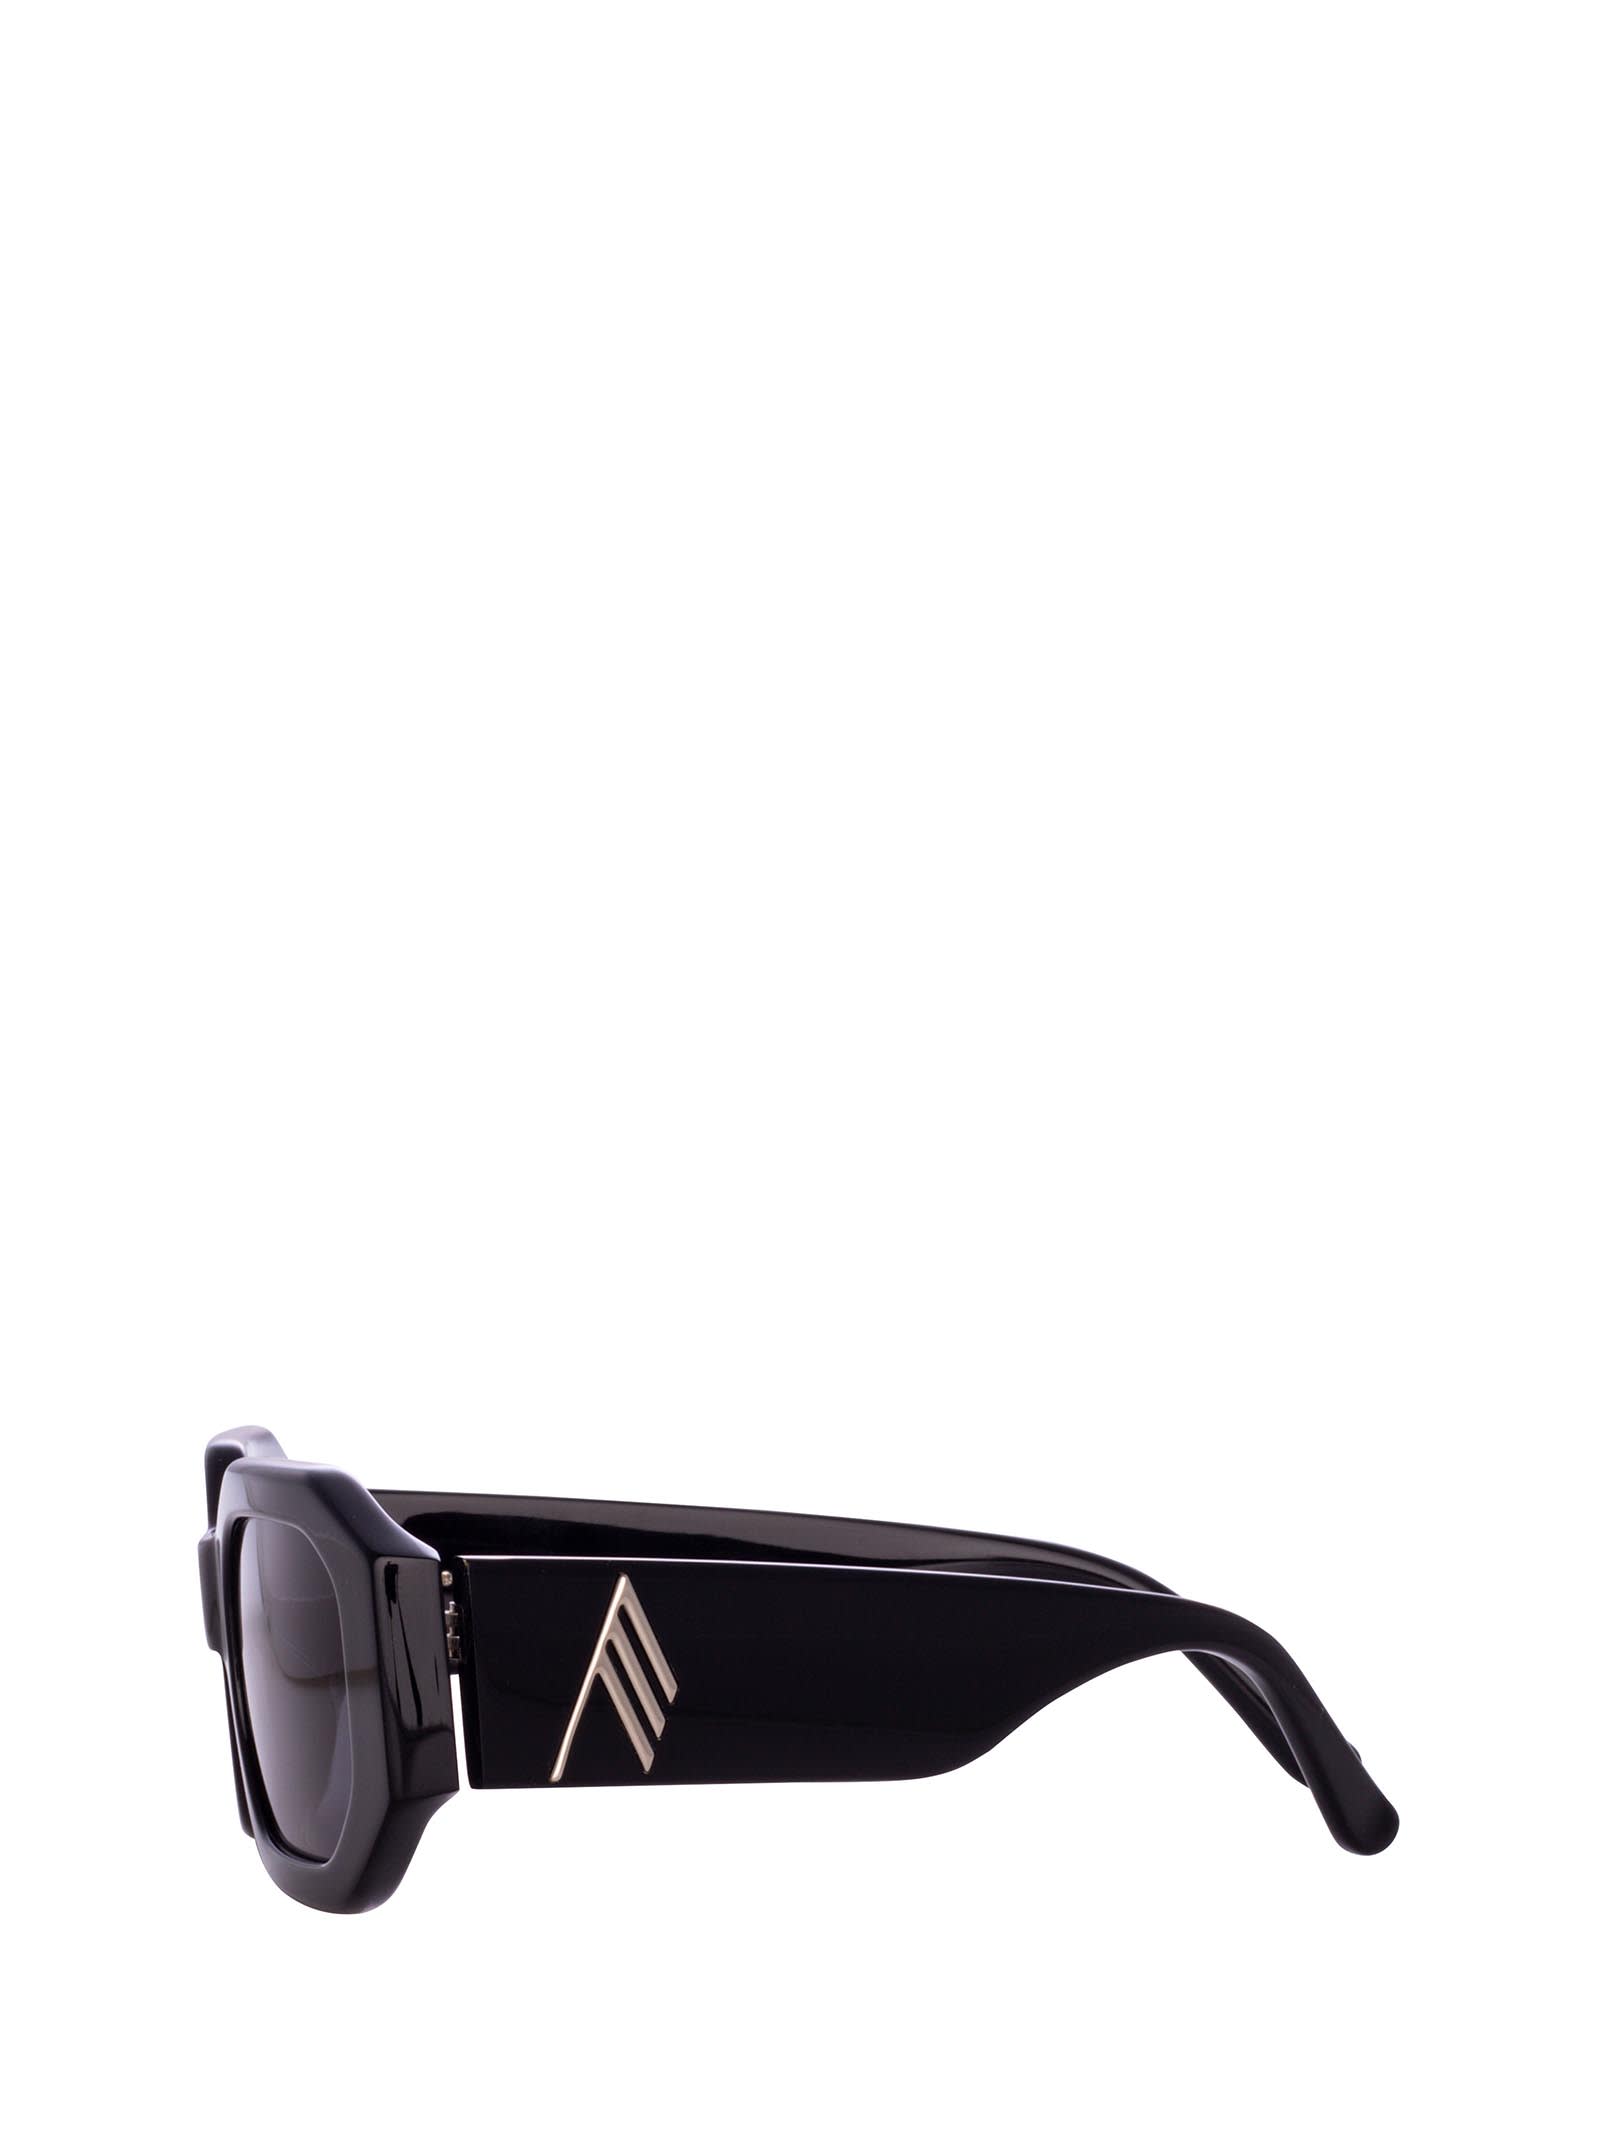 Shop Linda Farrow Attico45 Black / Silver Sunglasses